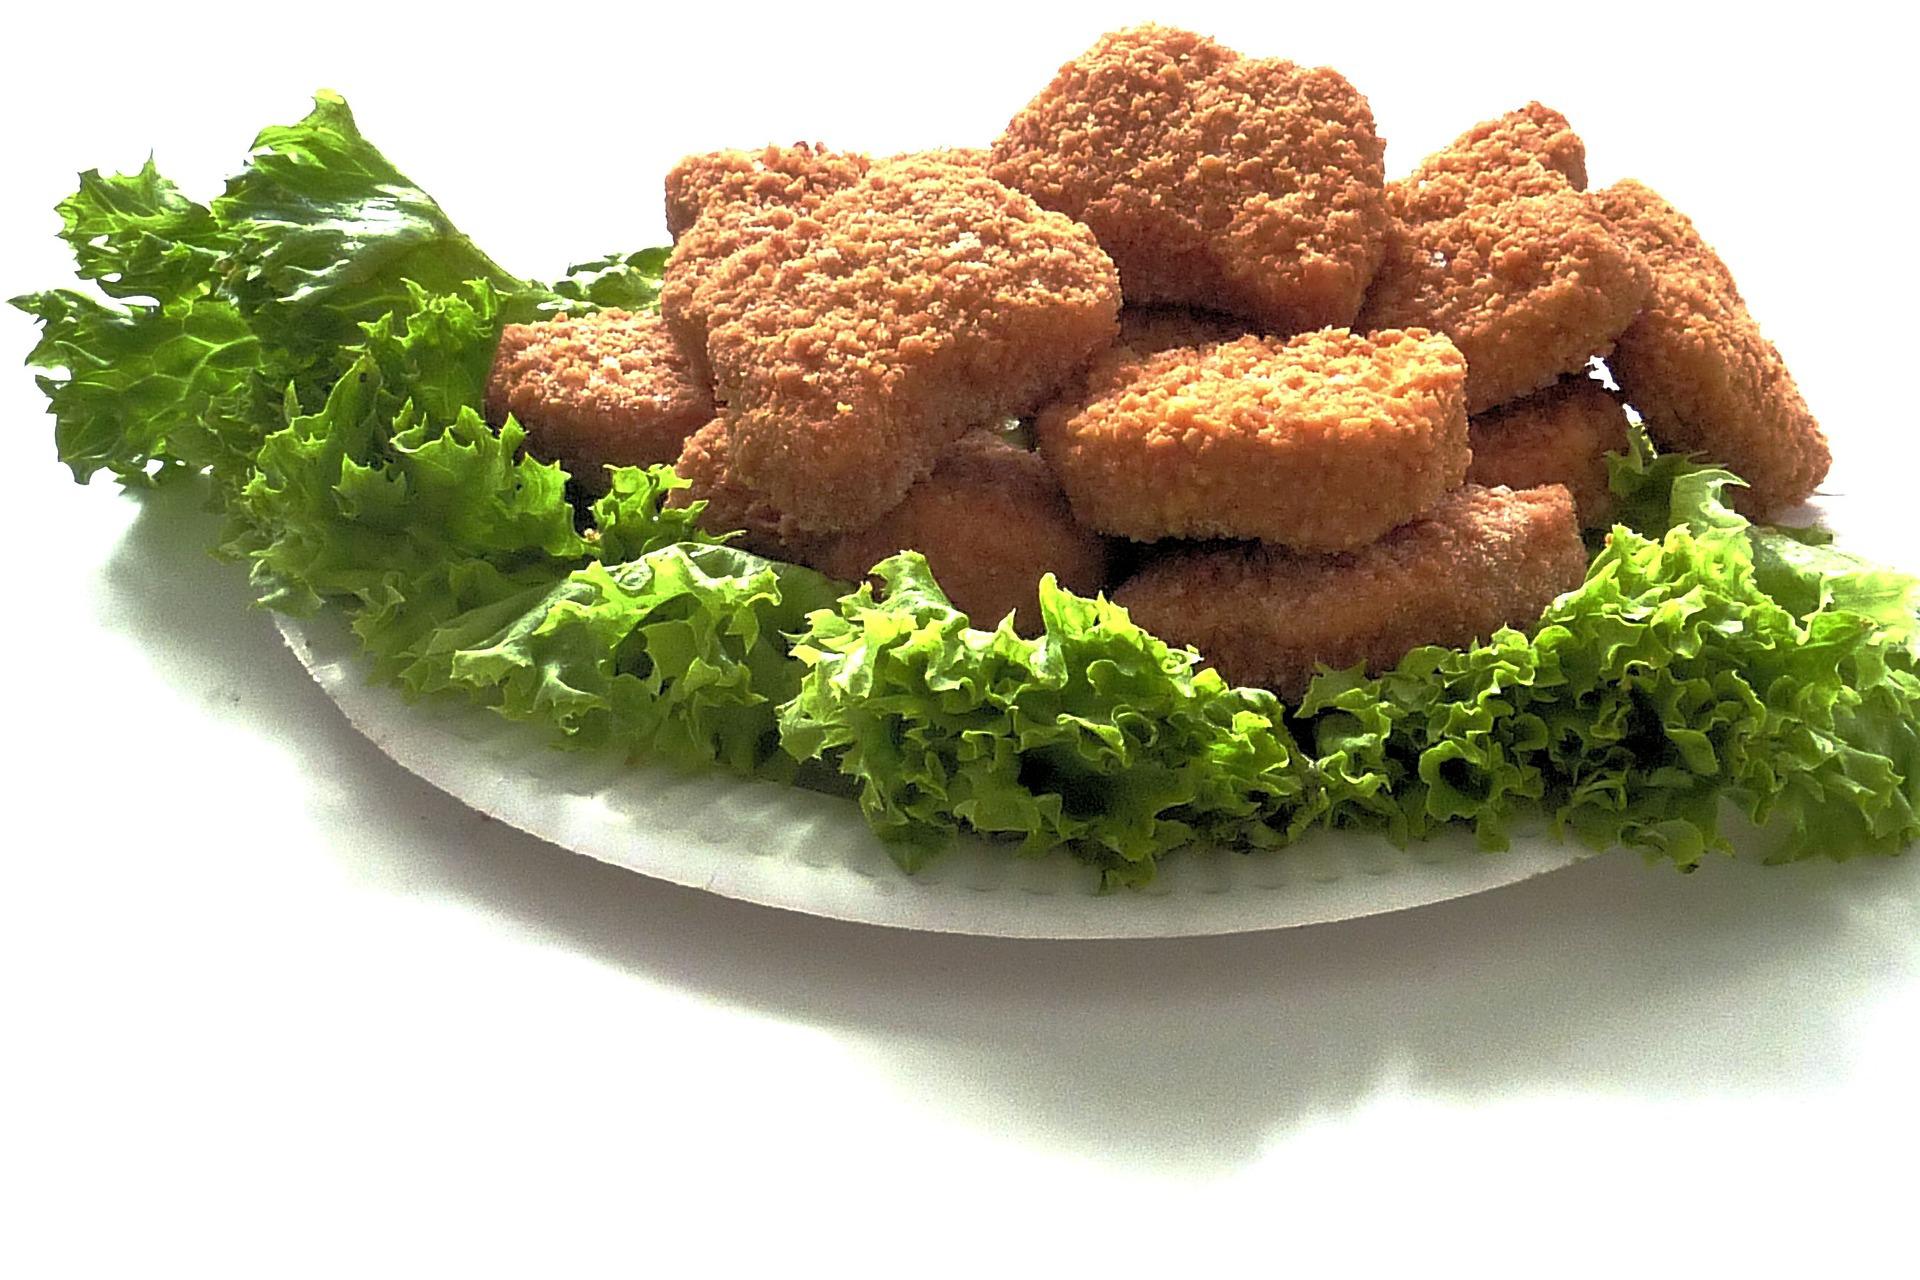 Tyson Chicken Nuggets in an Air Fryer